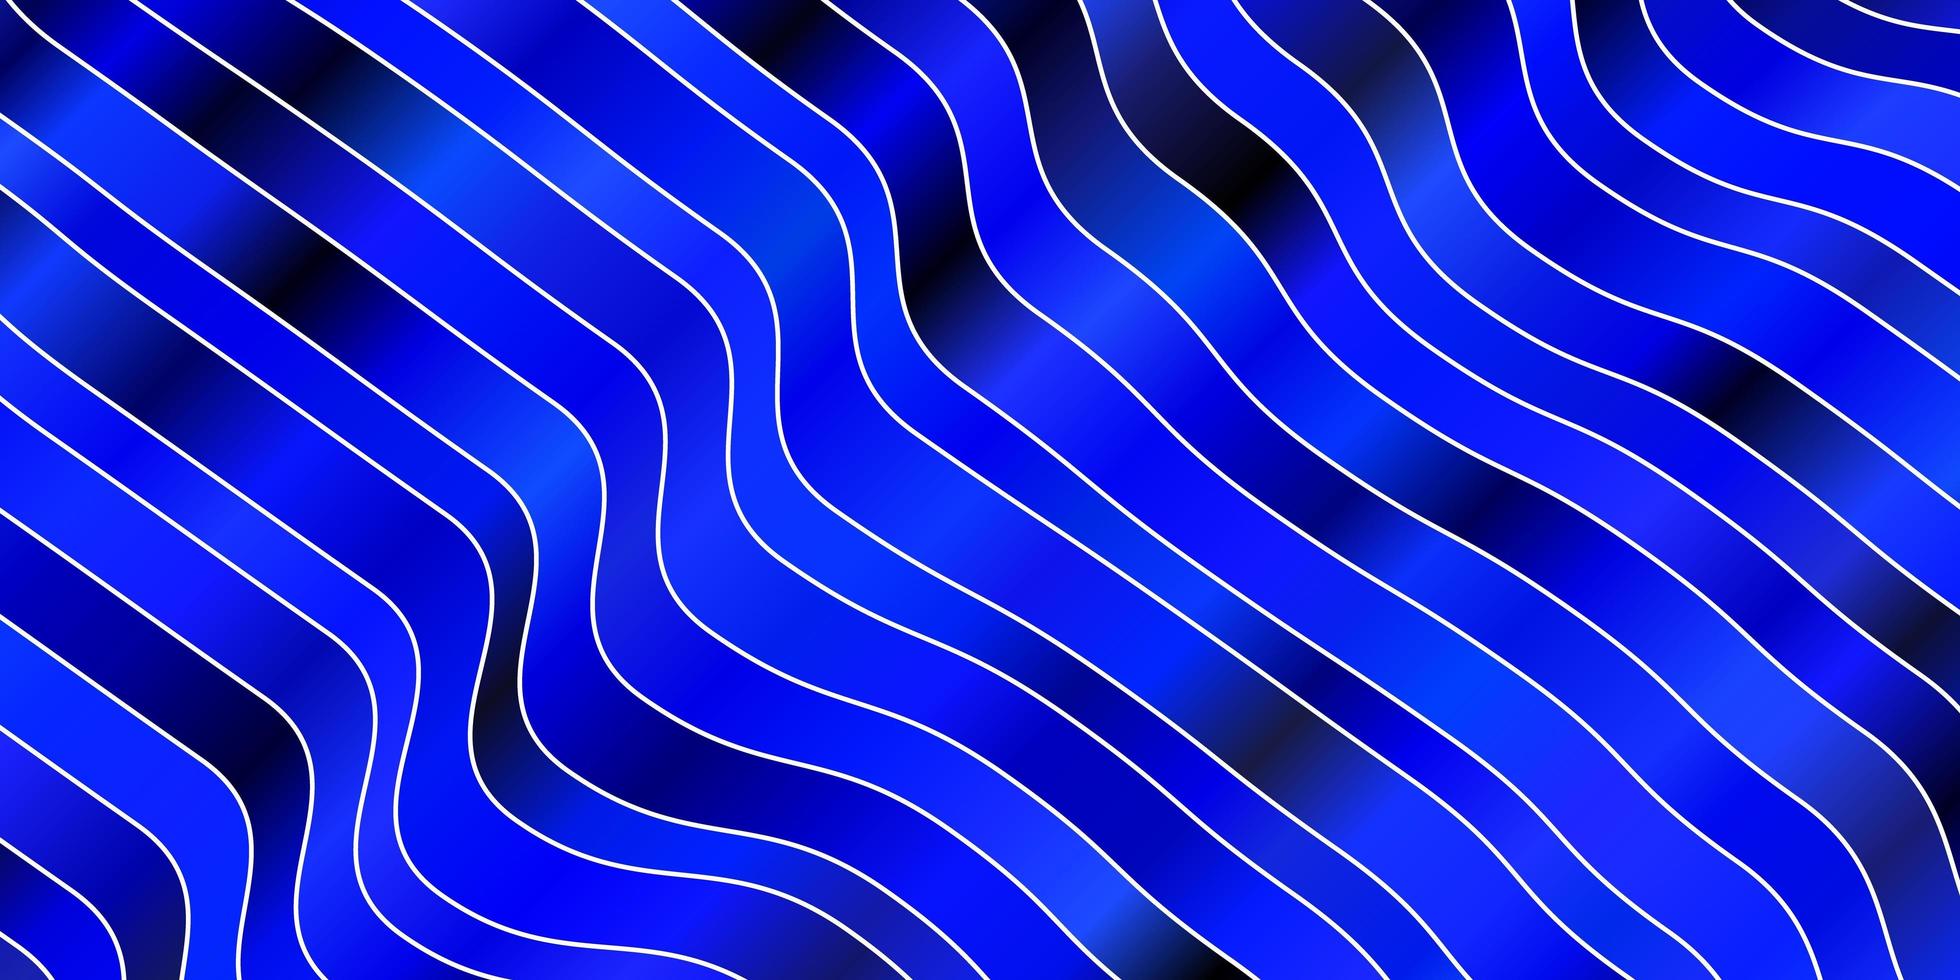 toile de fond de vecteur bleu foncé avec des lignes pliées. illustration abstraite avec des lignes de dégradé bandy. design intelligent pour vos promotions.